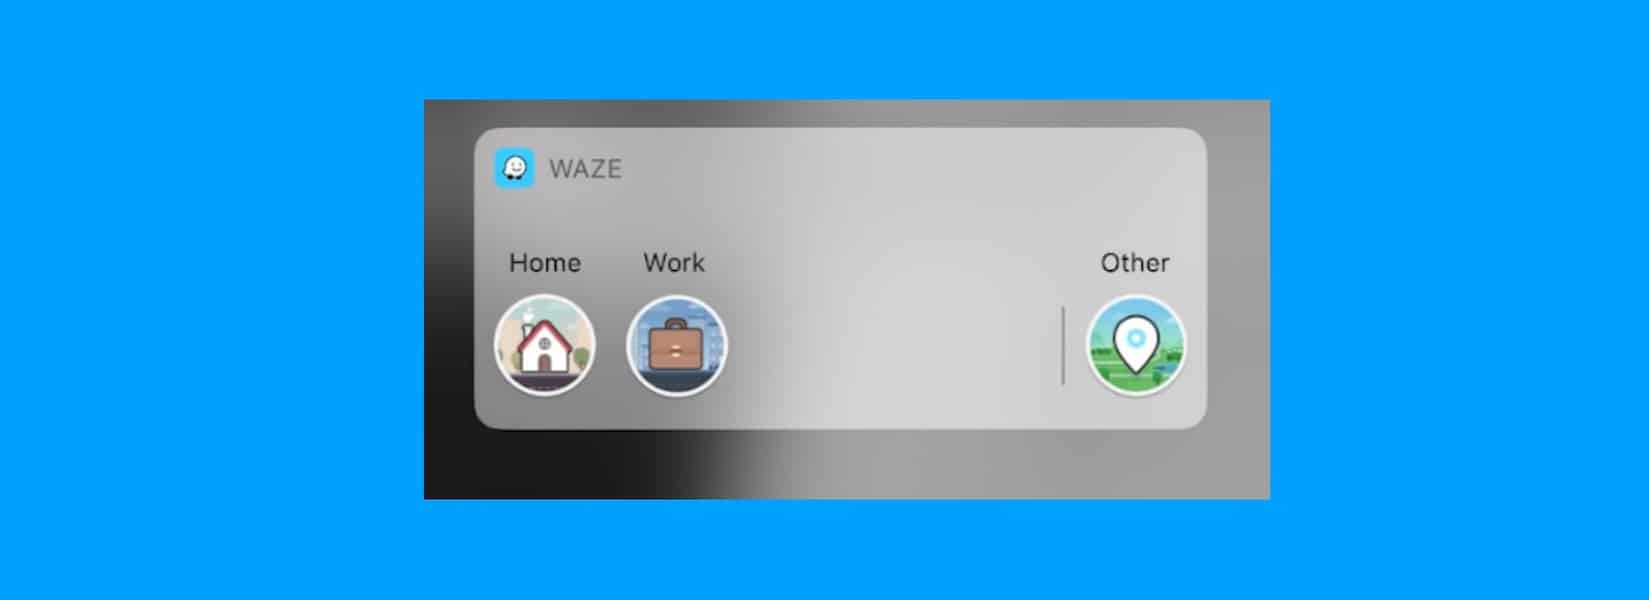 Waze for iOS